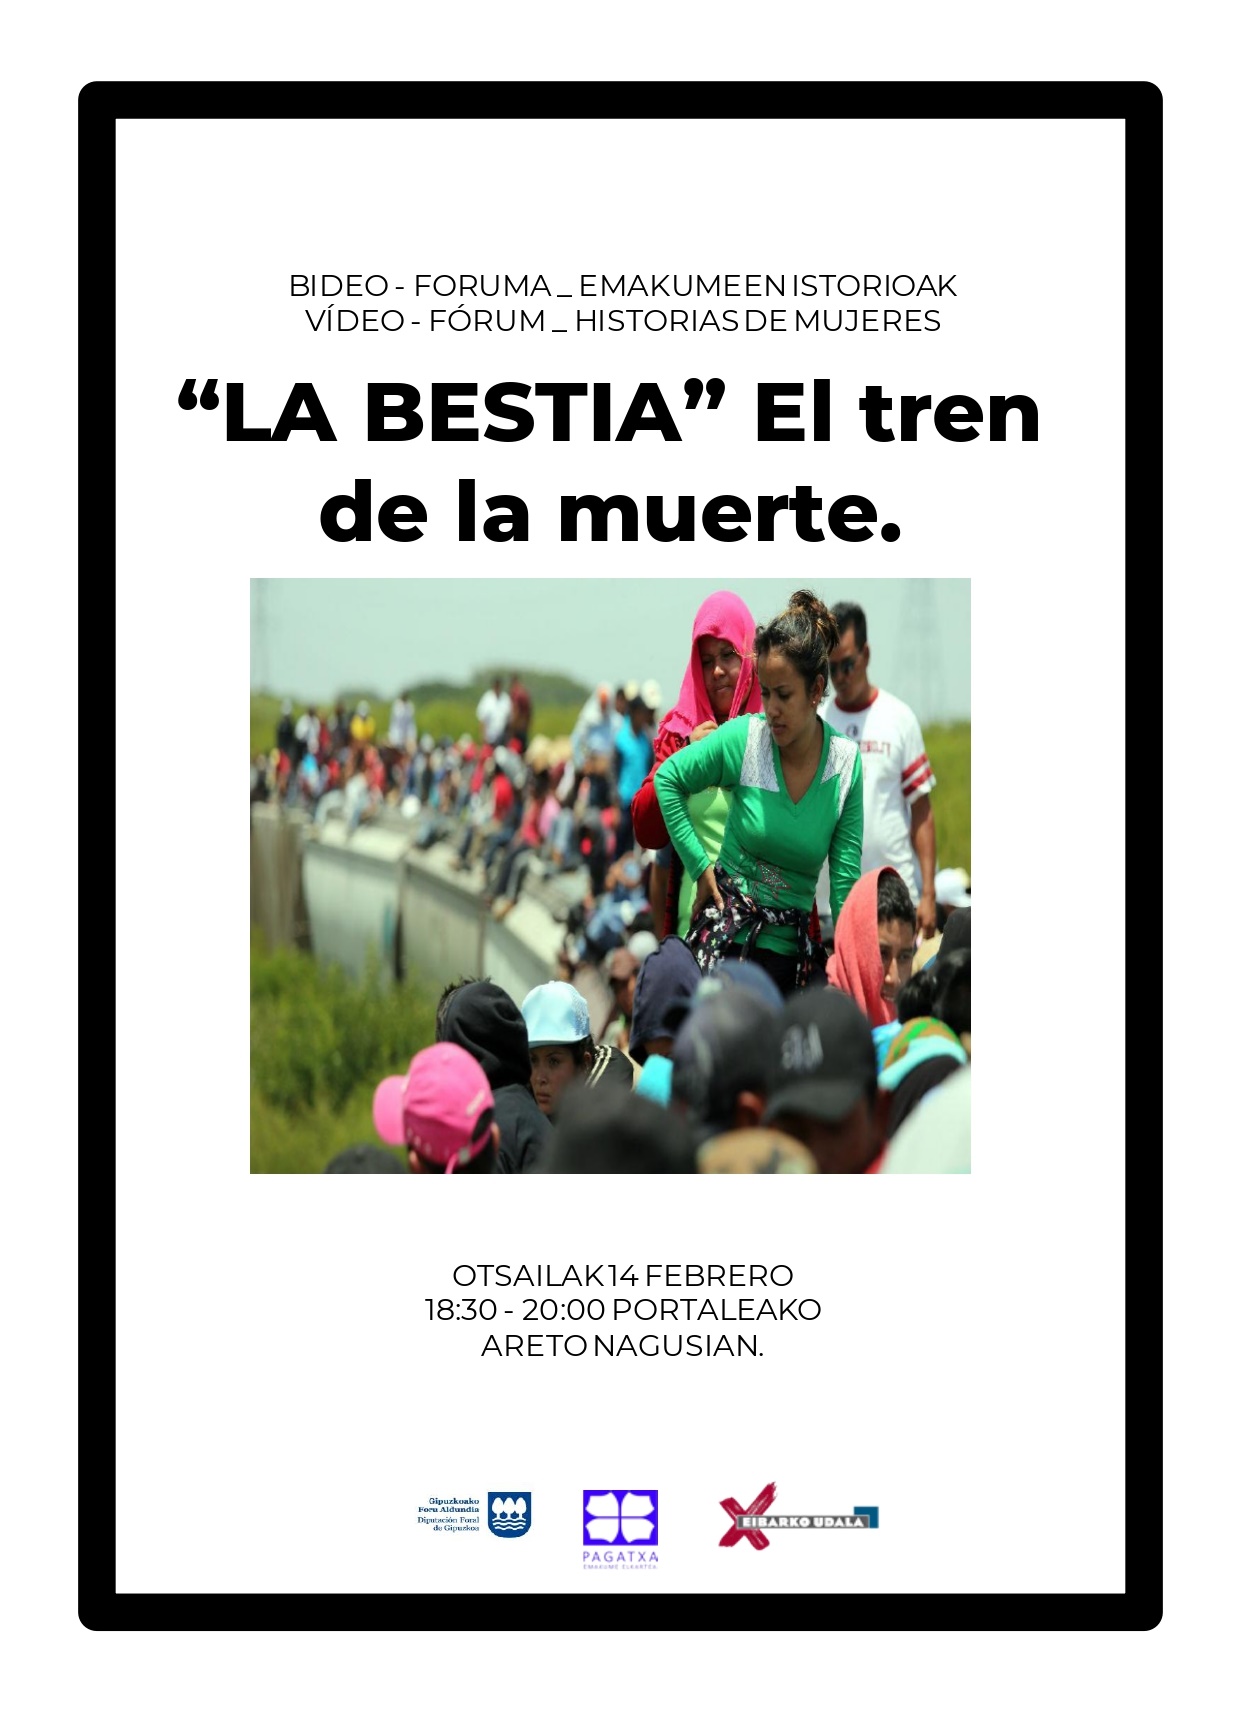 Video-Forum Historias de Mujeres: La Bestia, el tren de la muerta